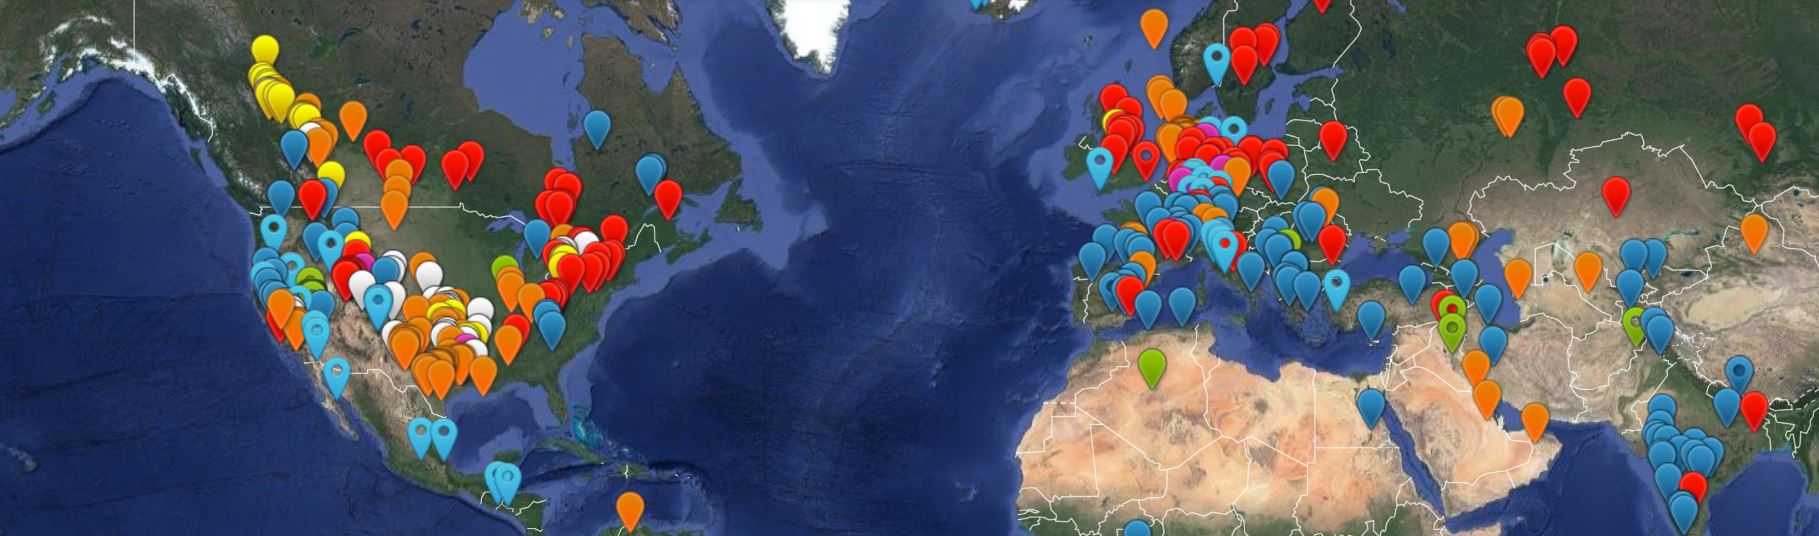 Mapa parcial de terremotos en el mundo. Fuente: HiQuake